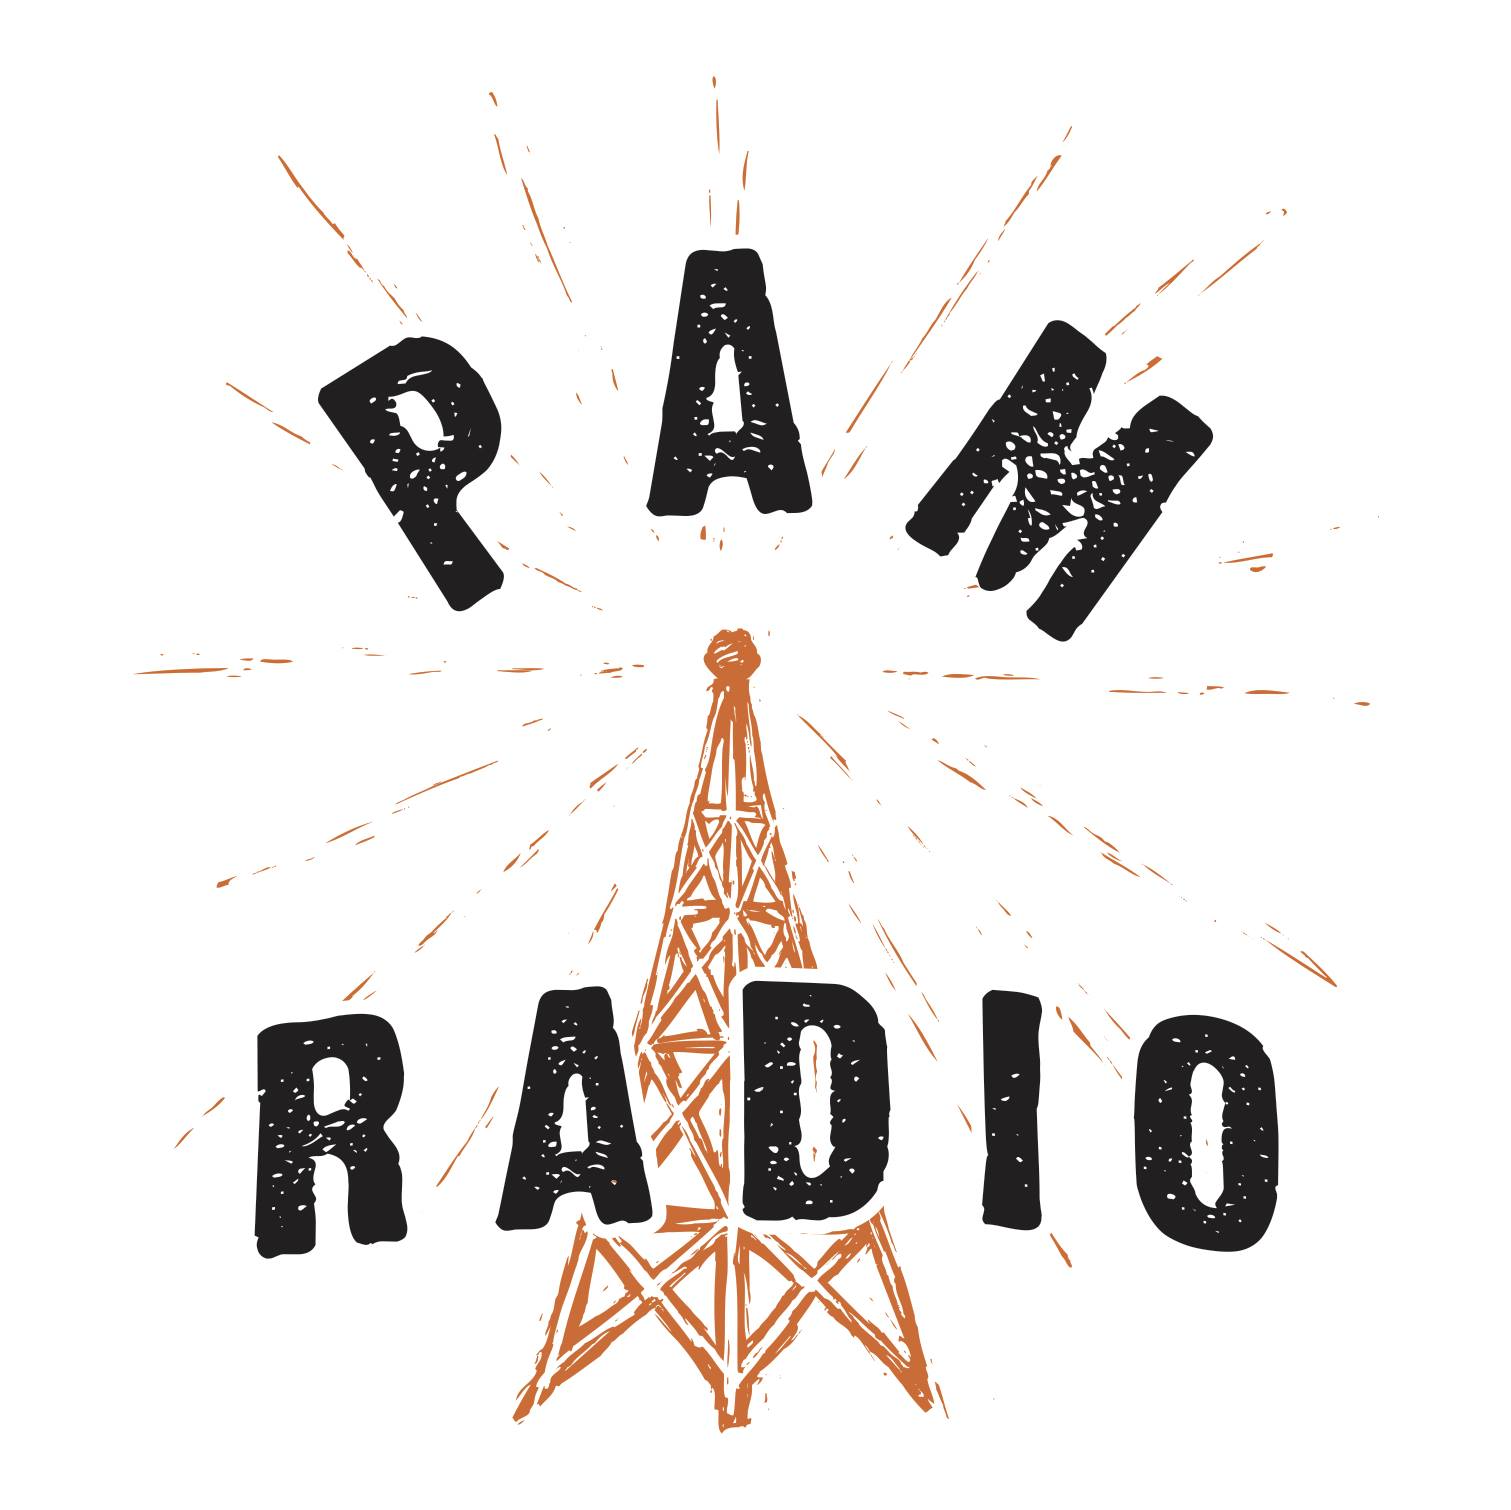 Pam Radio